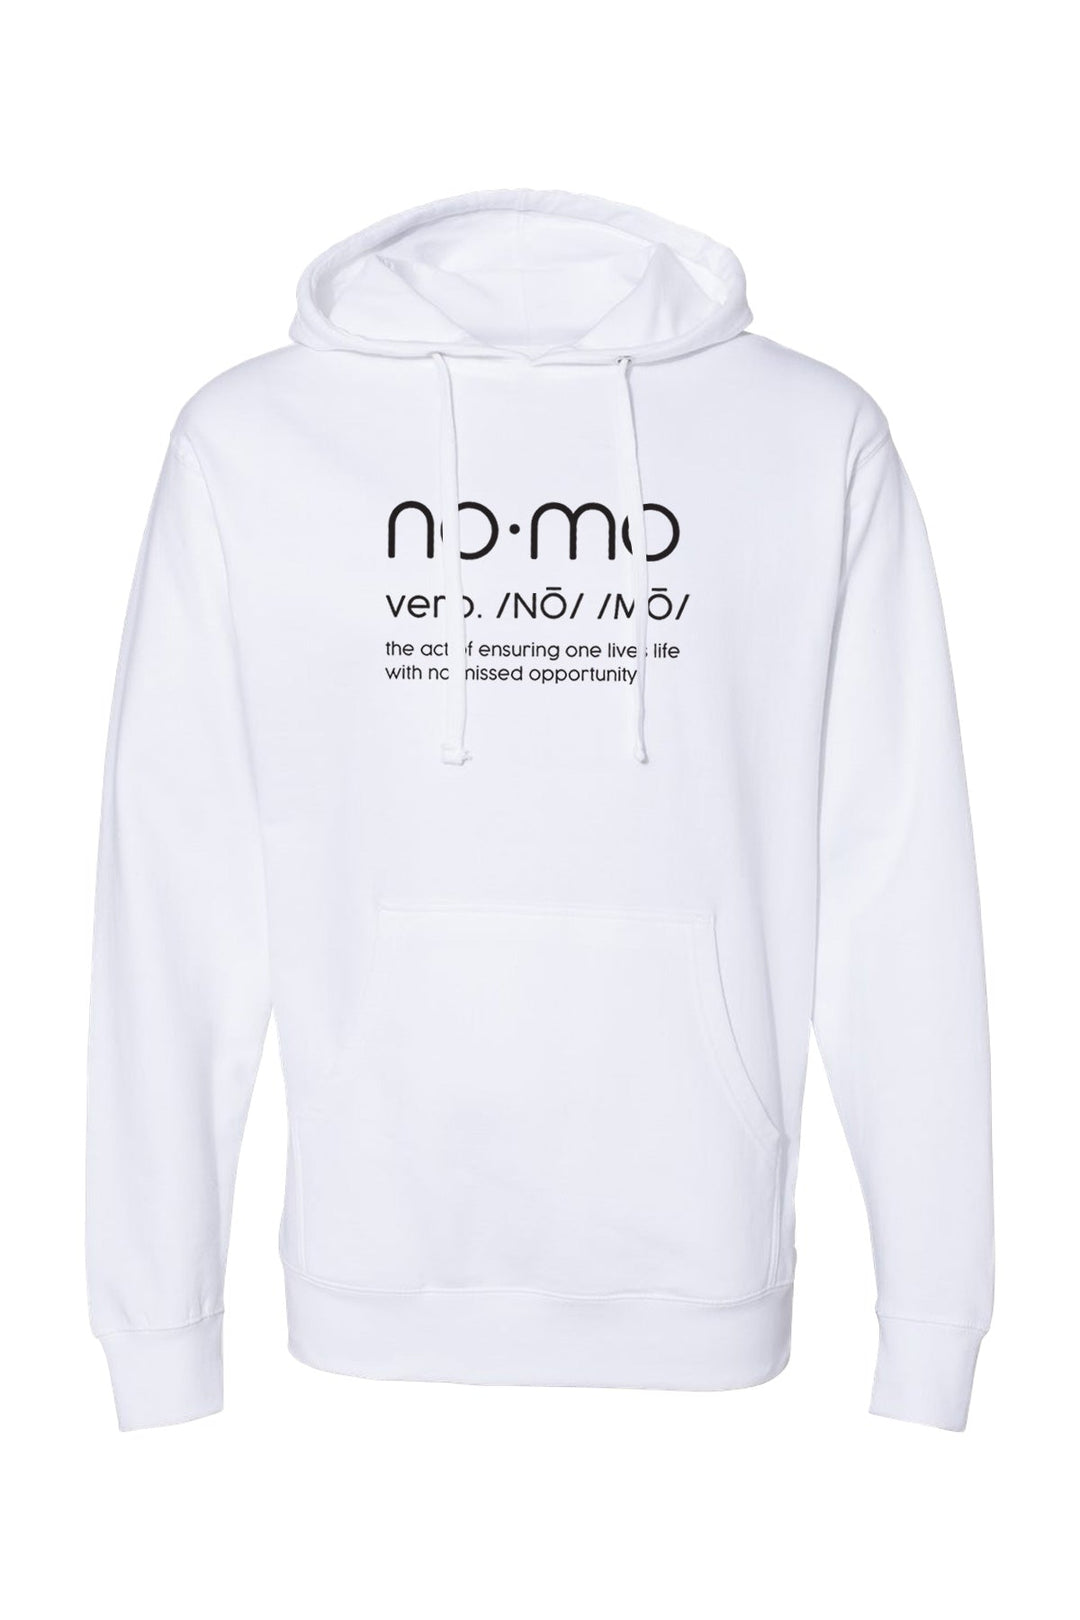 NOMO Verb Hooded Sweatshirt